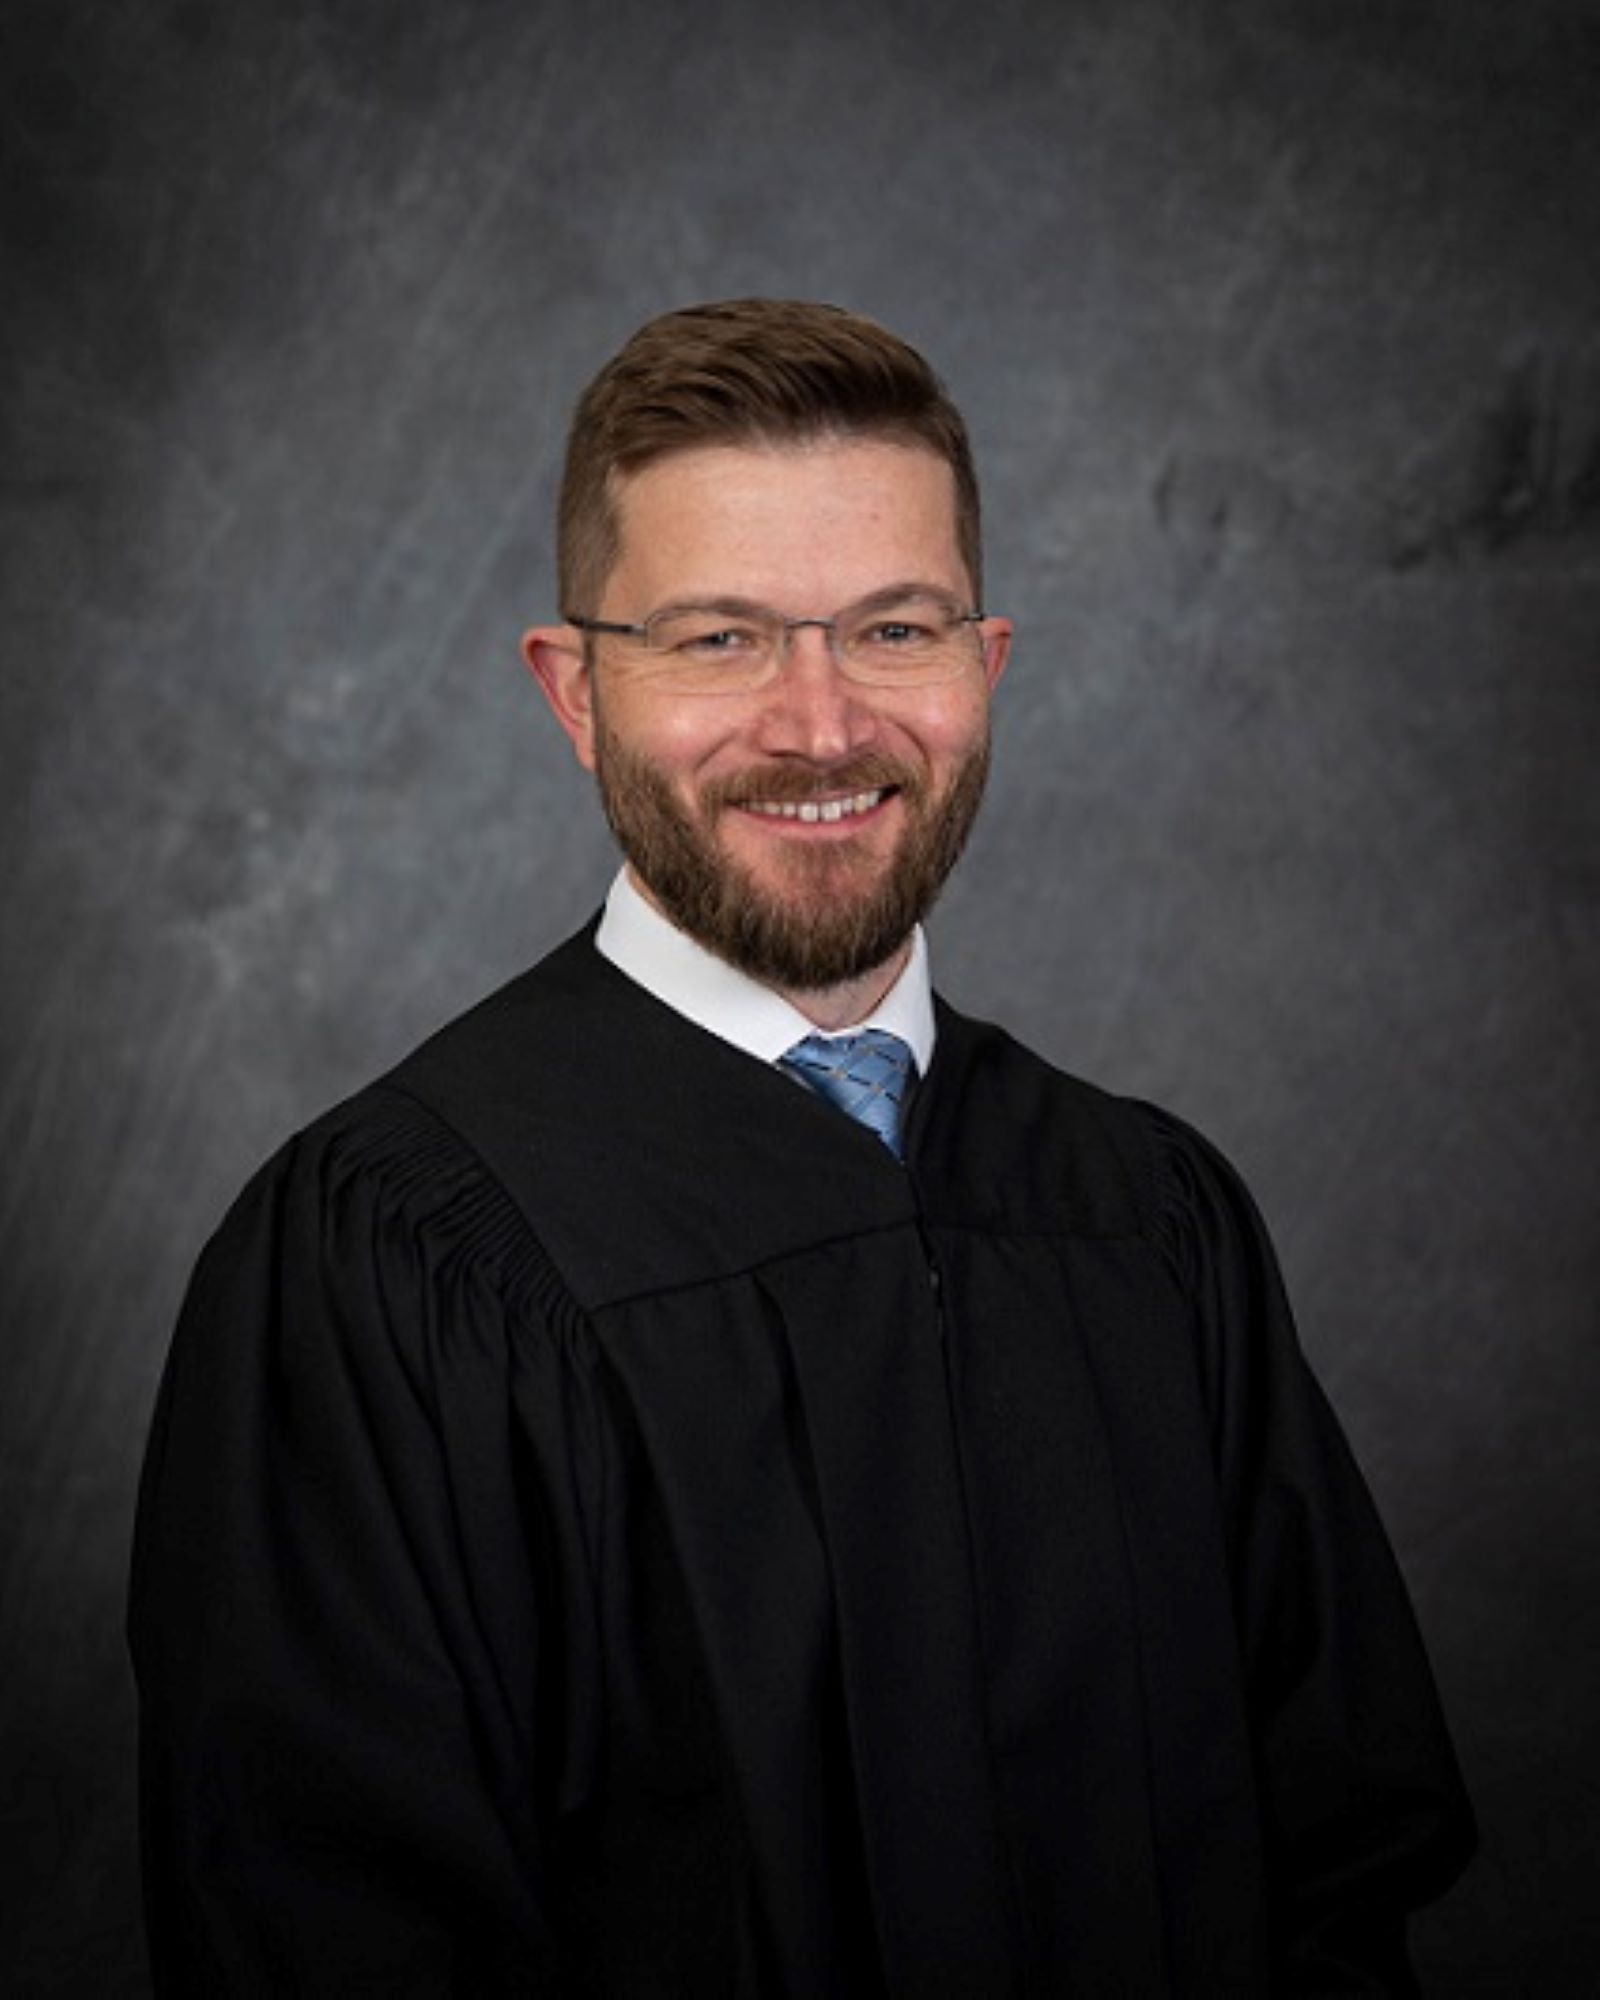 Greene County Circuit Court Judge Joshua Christensen